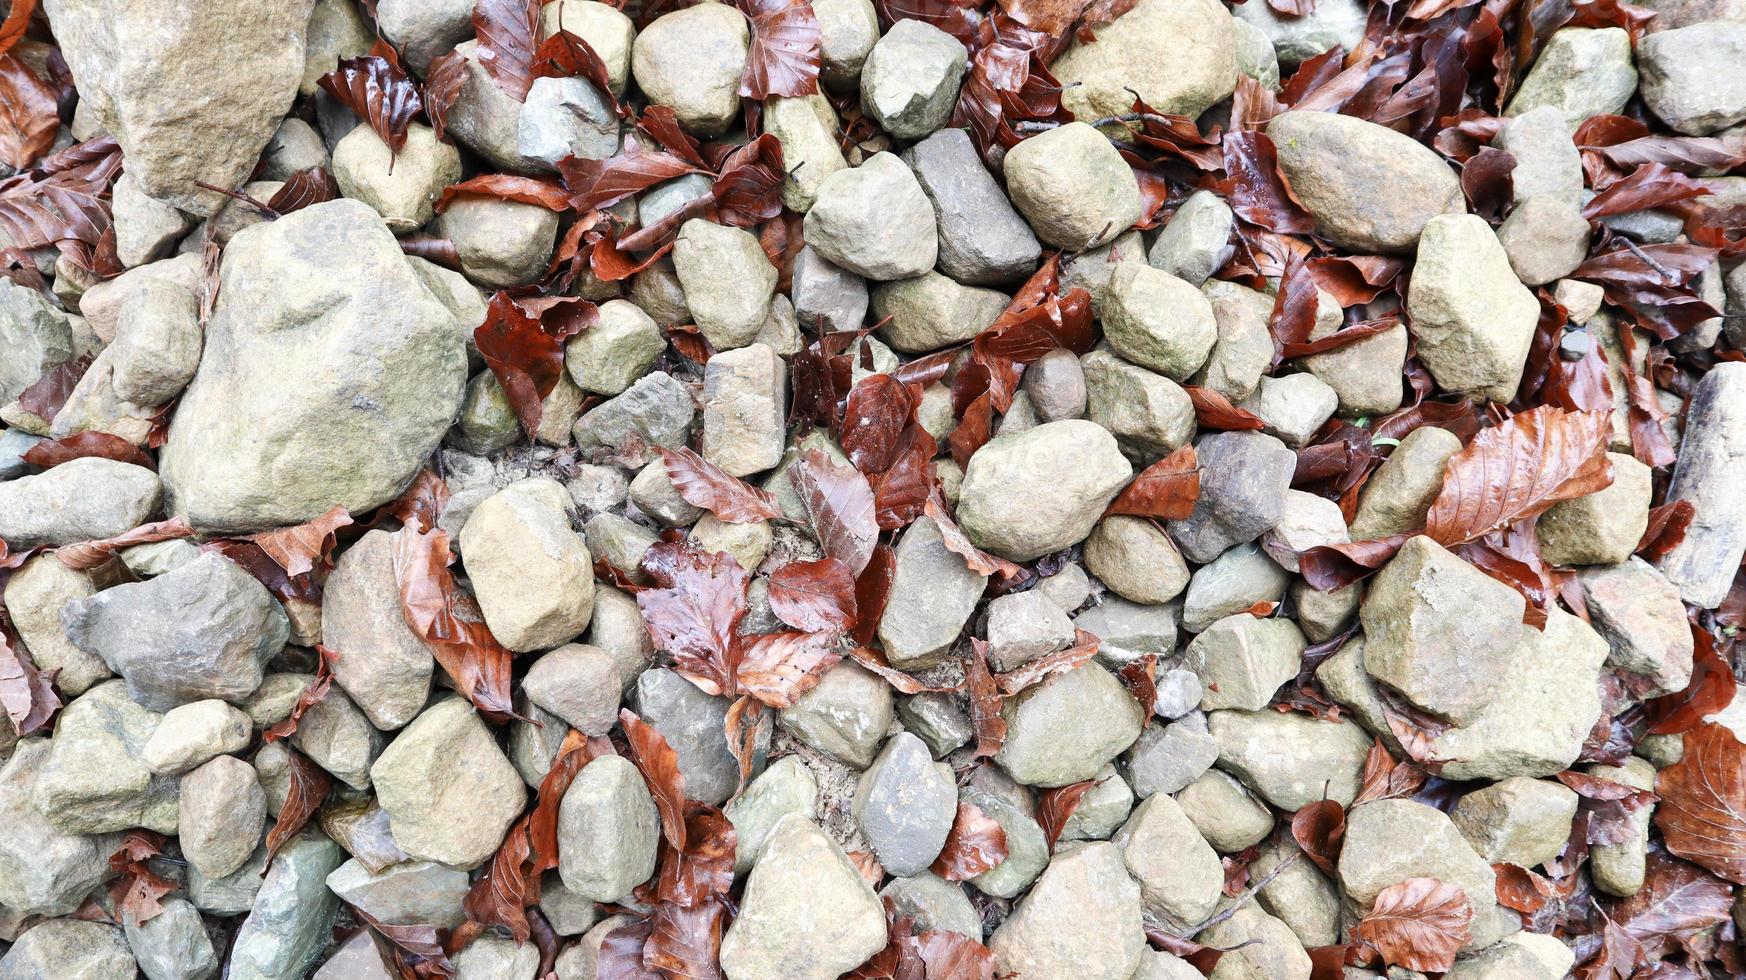 pedras arredondadas cinzentas com close-up de folhas caídas. close-up de pedras coloridas no chão com folhas secas e um pouco de lã. pedra padrão. pedra natural no chão. foto